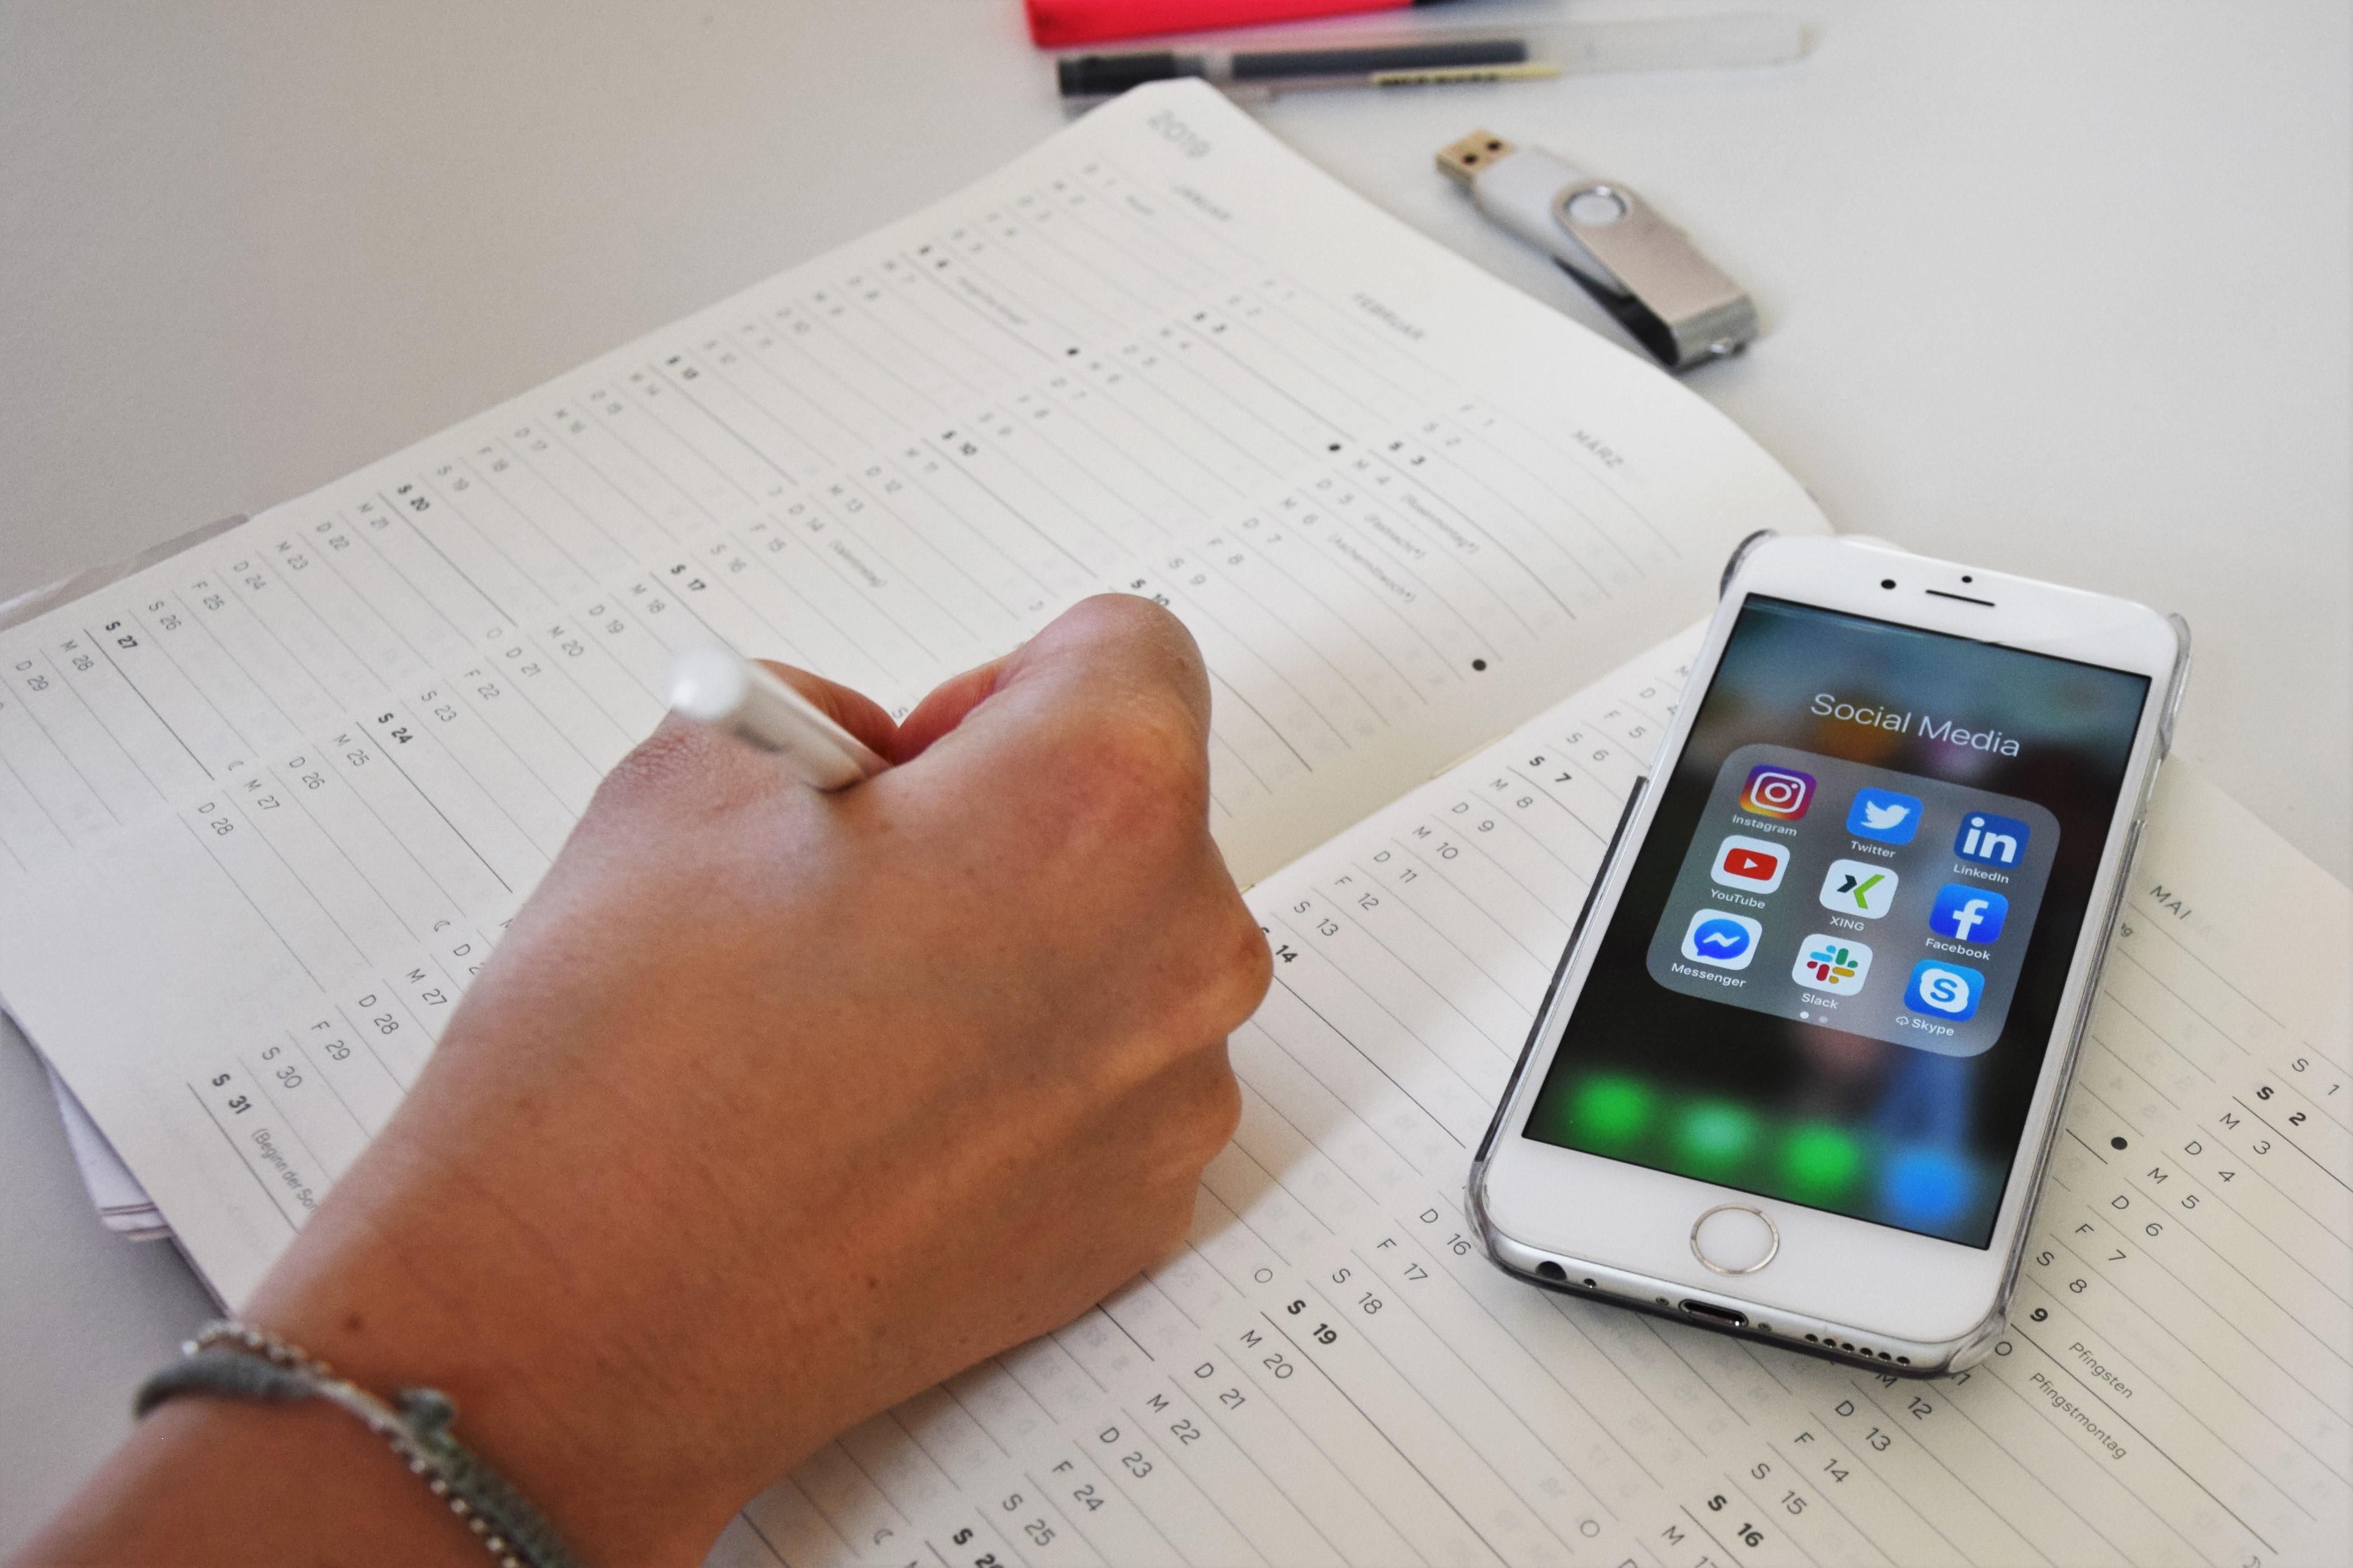 Eine Person trägt einen Termin in einen geöffneten Kalender ein, während auf dem Smartphone daneben Social Media Apps zu sehen sind.